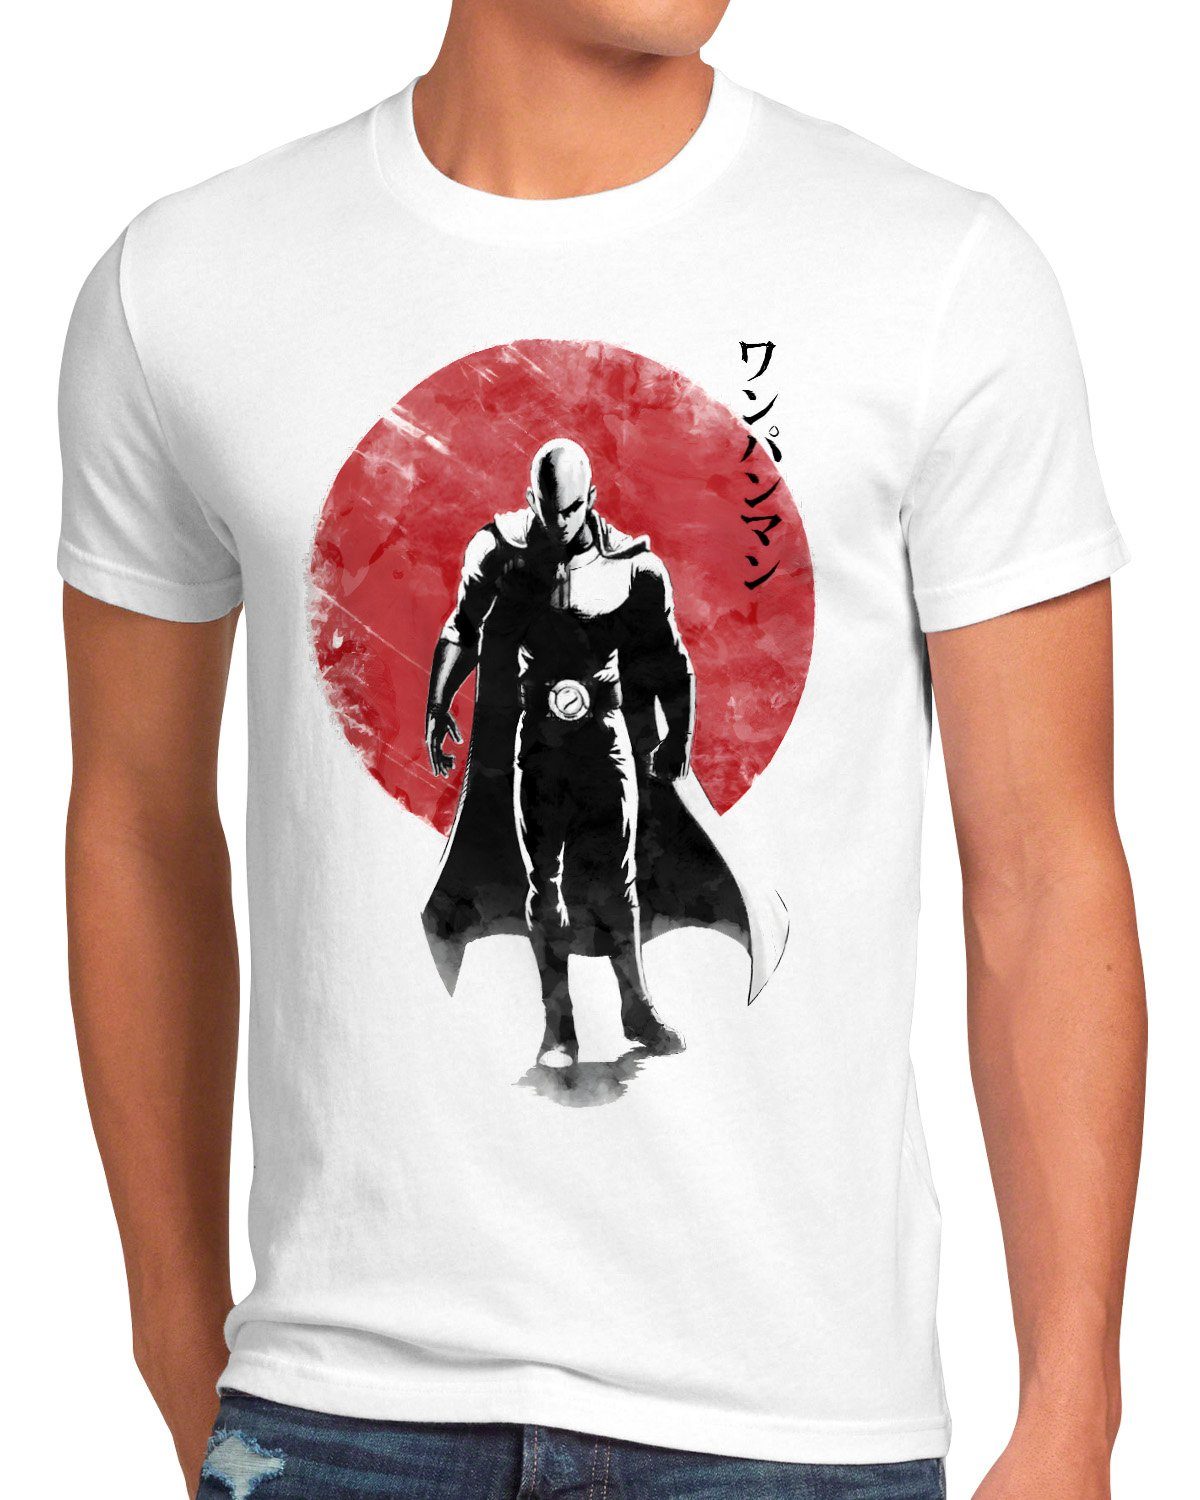 Hero Print-Shirt style3 T-Shirt man saitama anime one manga punch Herren Sunset